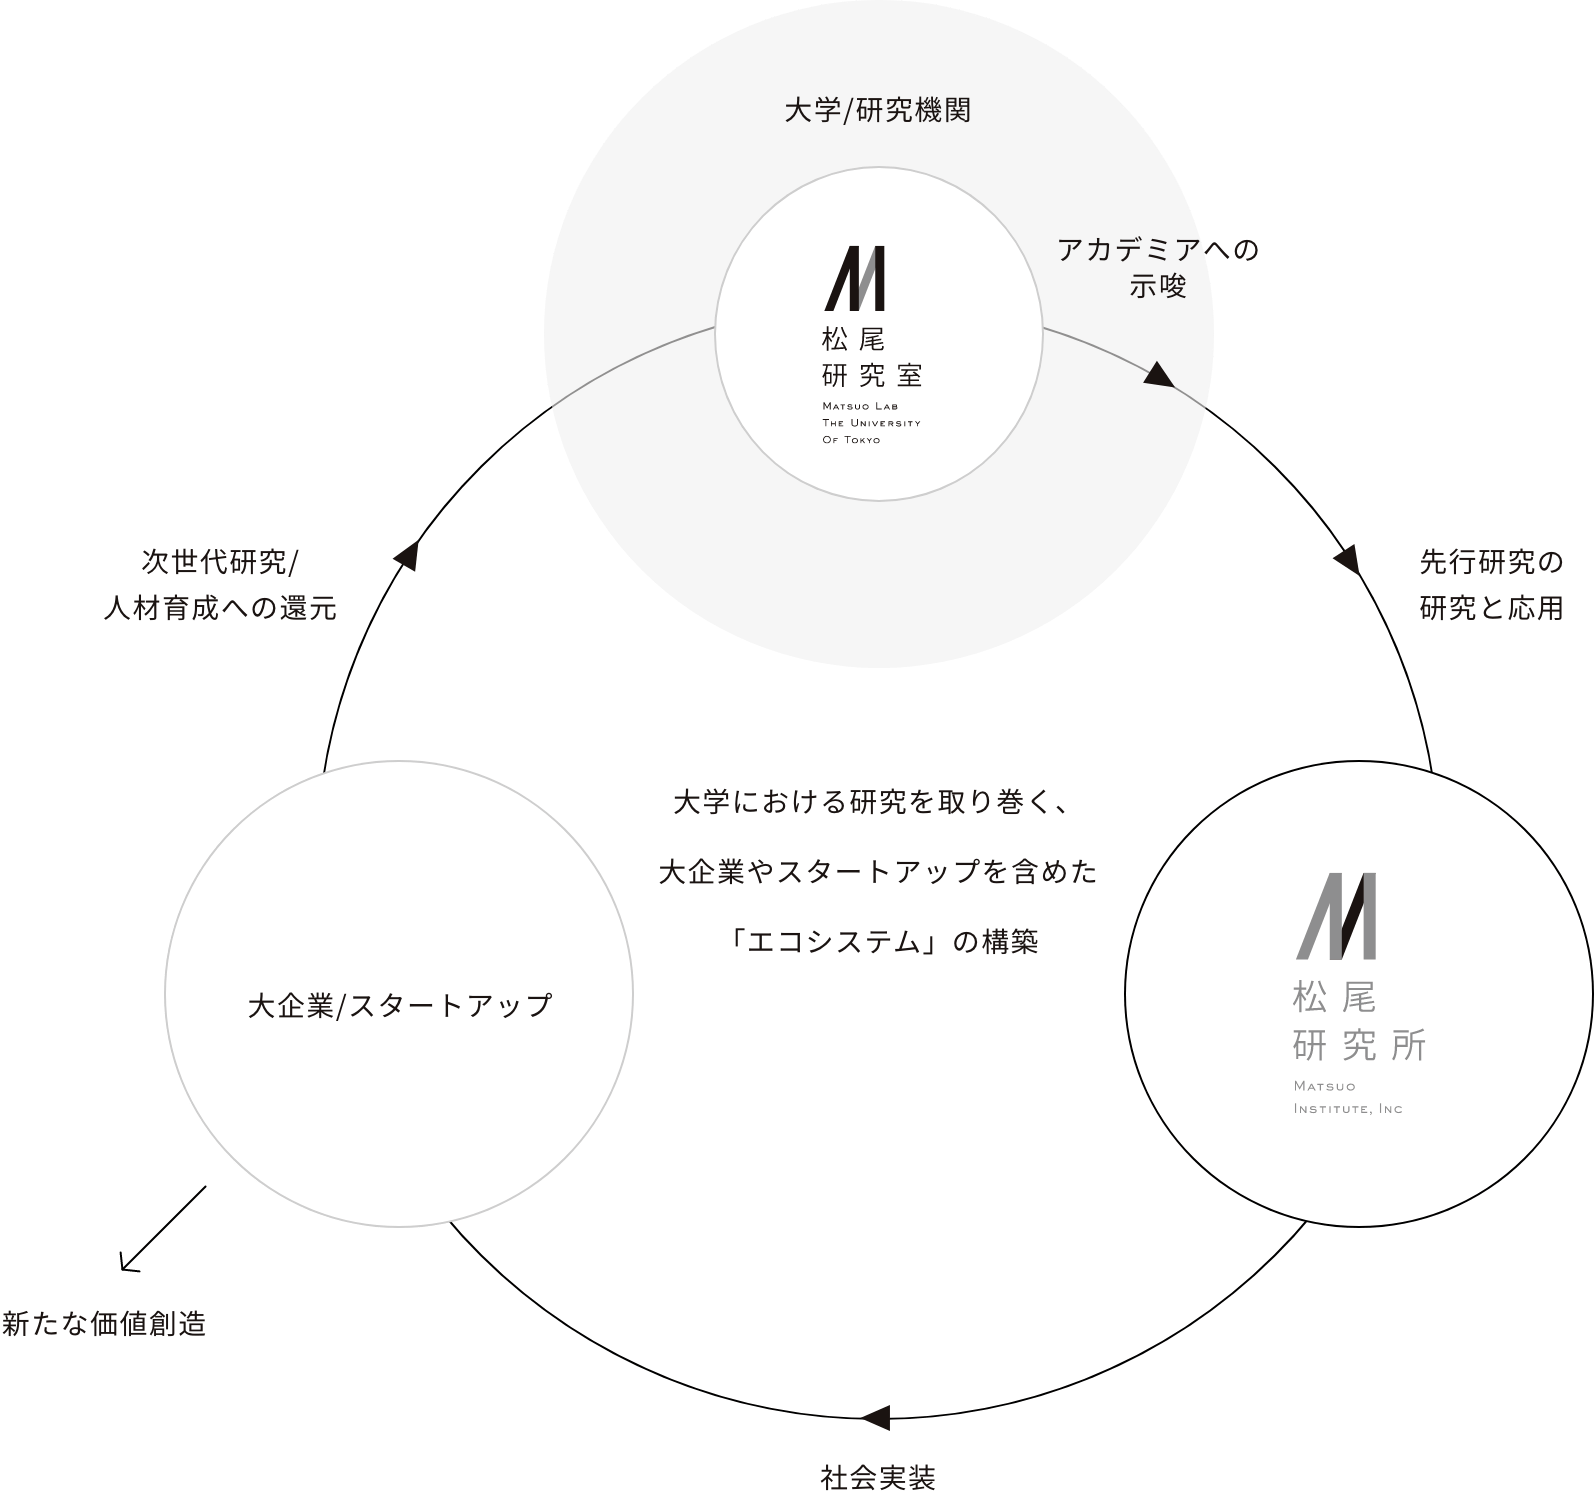 松尾研究所関係図